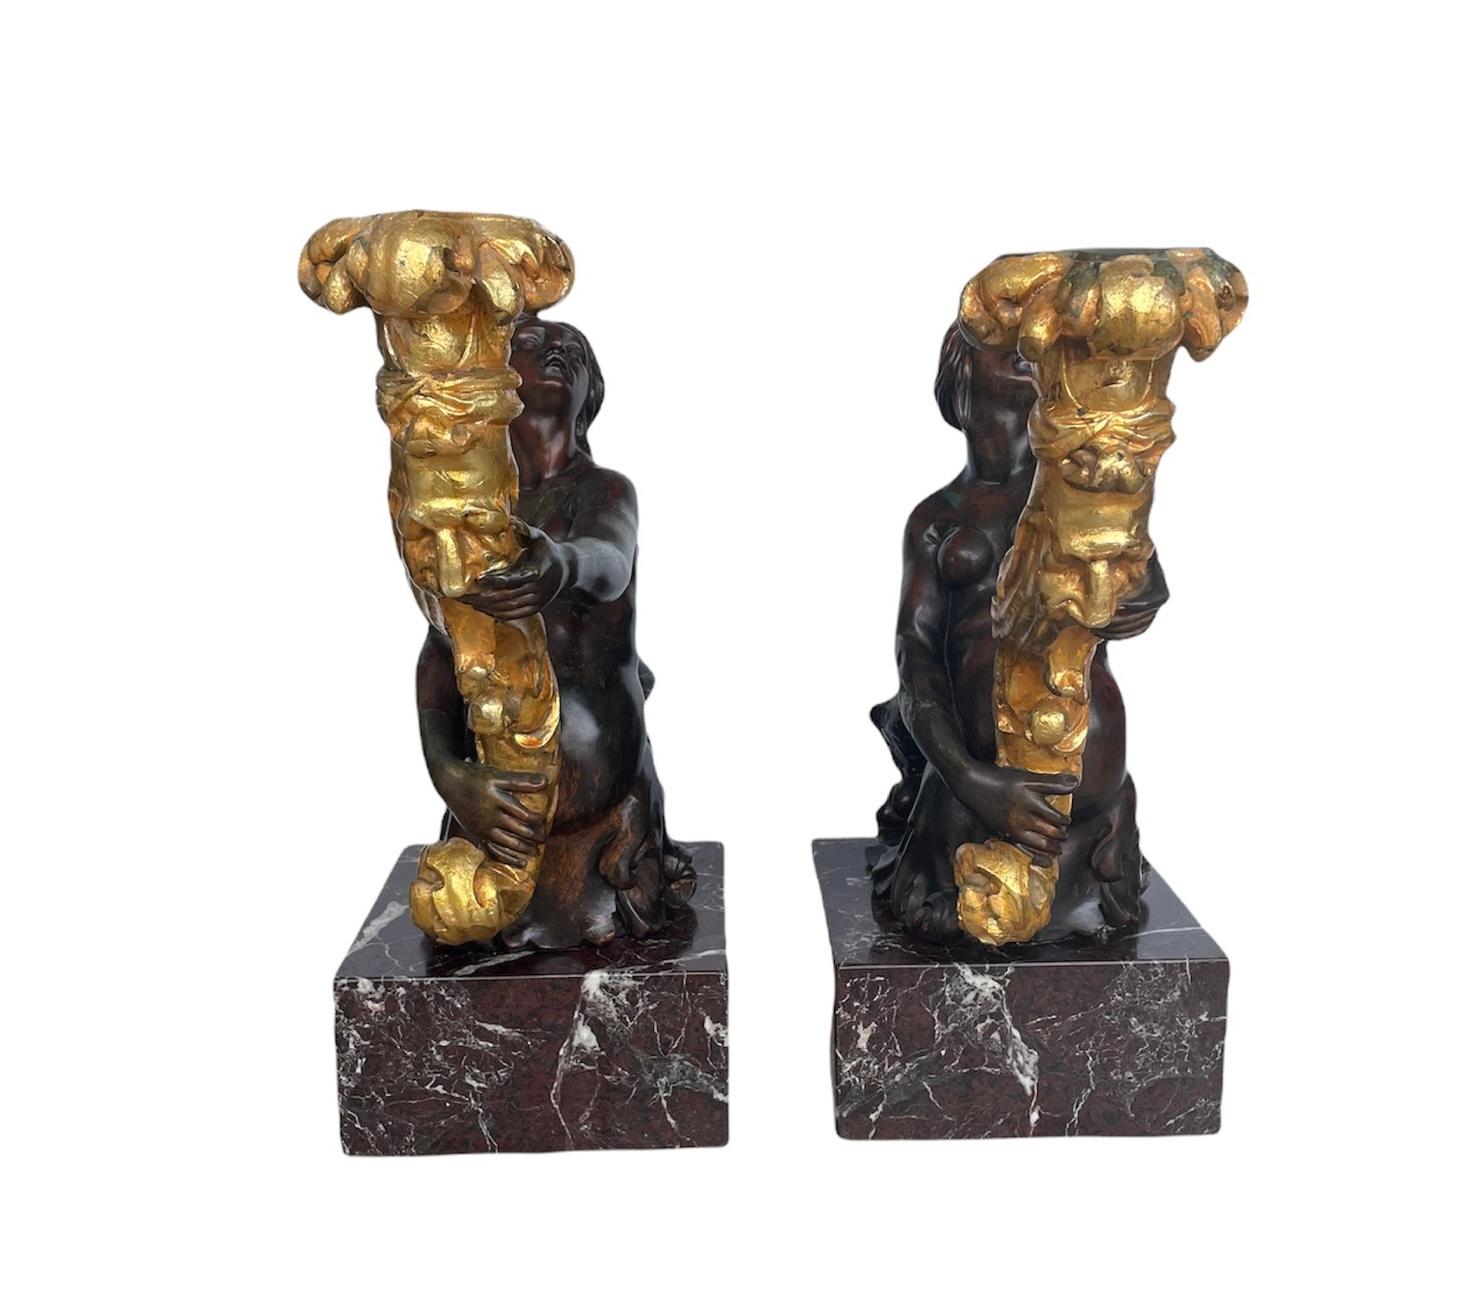 Es handelt sich um ein Paar großer, schwerer, patinierter Bronzeskulpturen von Meerjungfrauenfiguren mit Fackeln und/oder Kandelabern. Die Bilder zeigen einen halbhaarigen Kopf und eine nackte, geknöchelte Frau mit einem unteren Körper in